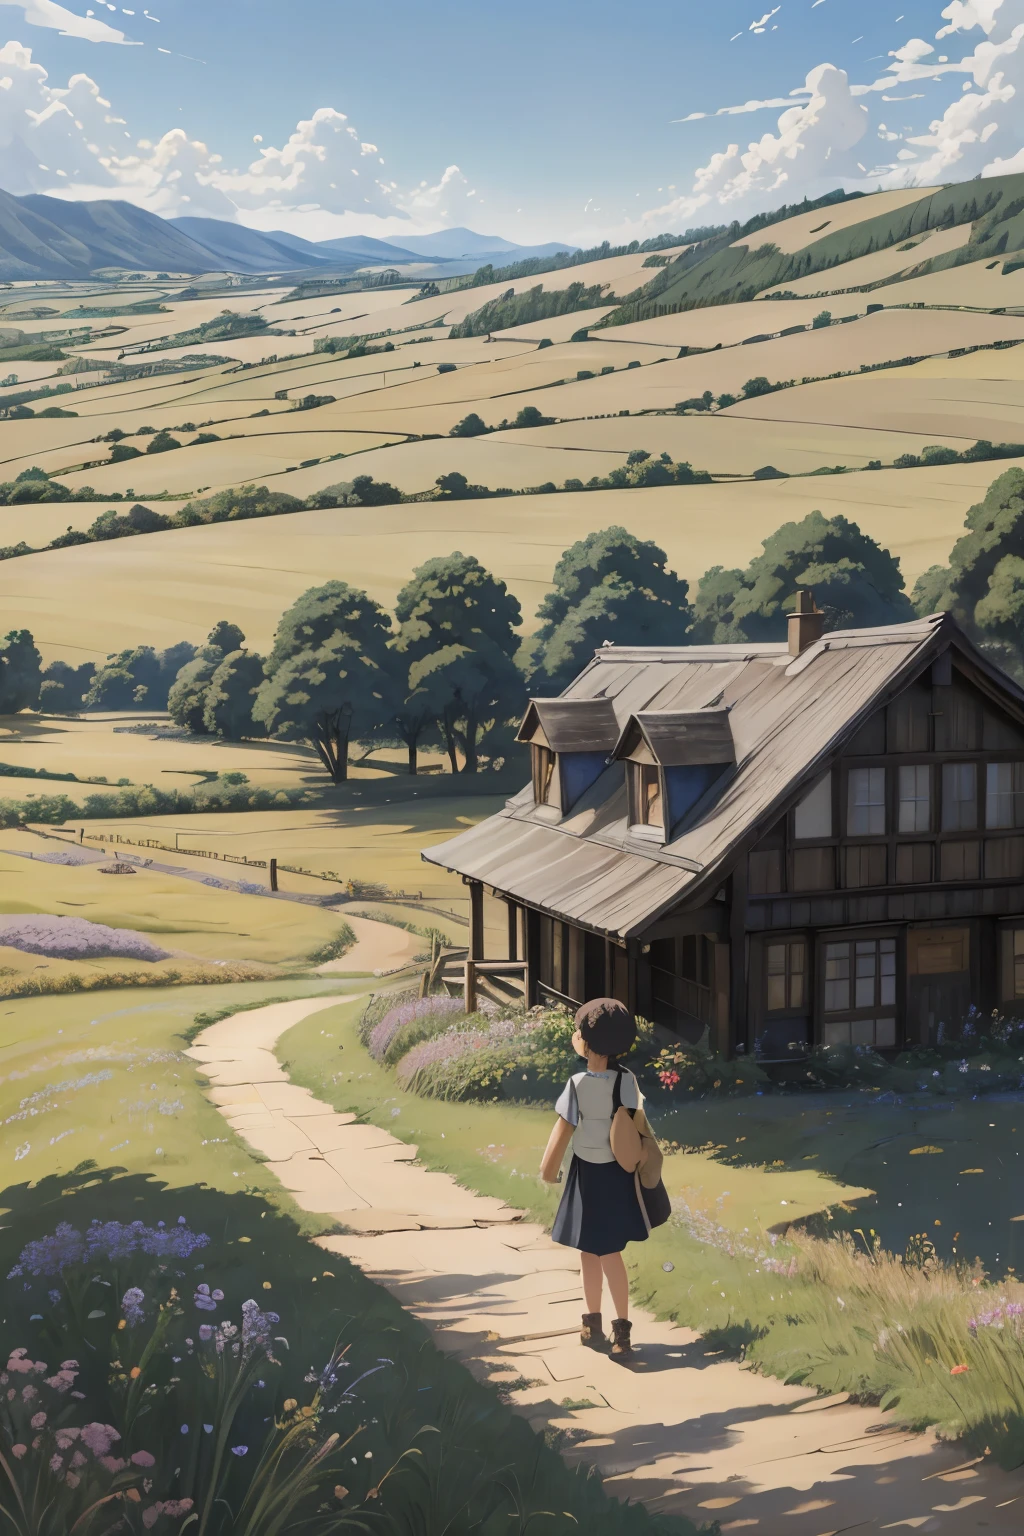 Realistisch, real, wunderschöne und atemberaubende Landschaft Ölgemälde Studio Ghibli Hayao Miyazaki Blütenblätter Grasland blauer Himmel Grasland Landstraße,Gebäude, schönes Mädchen